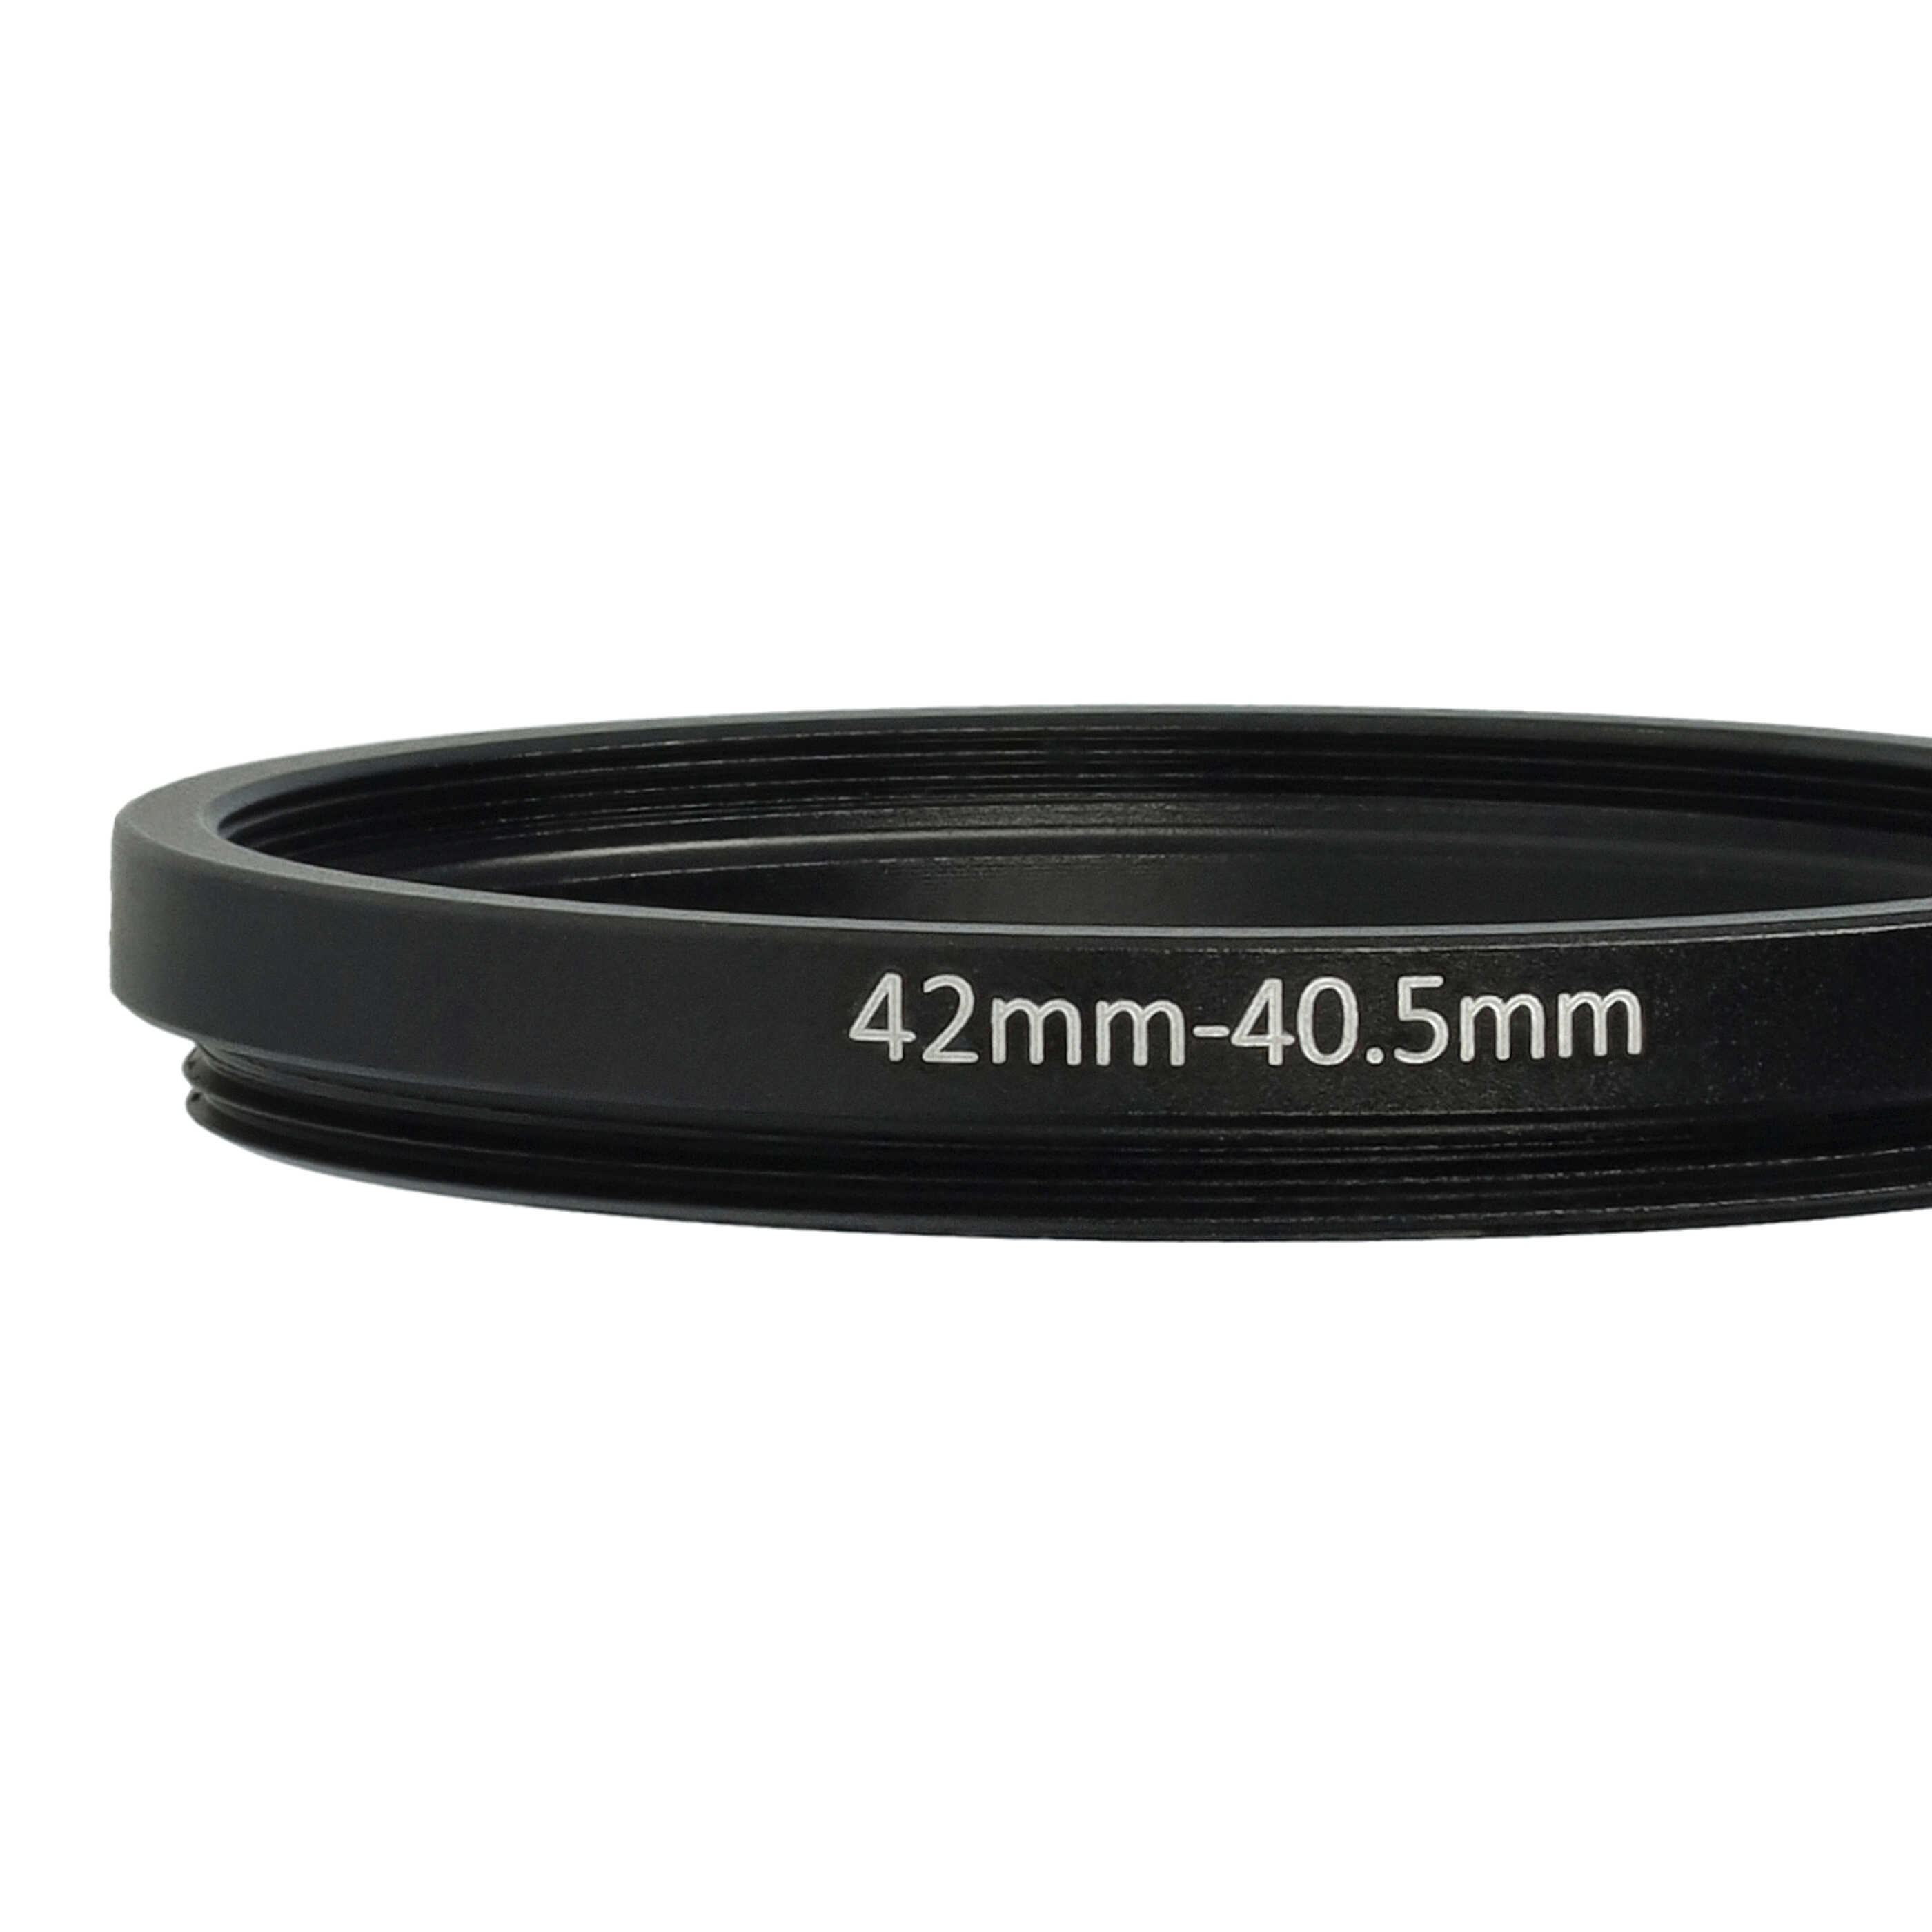 Redukcja filtrowa adapter Step-Down 42 mm - 40,5 mm pasująca do obiektywu - metal, czarny